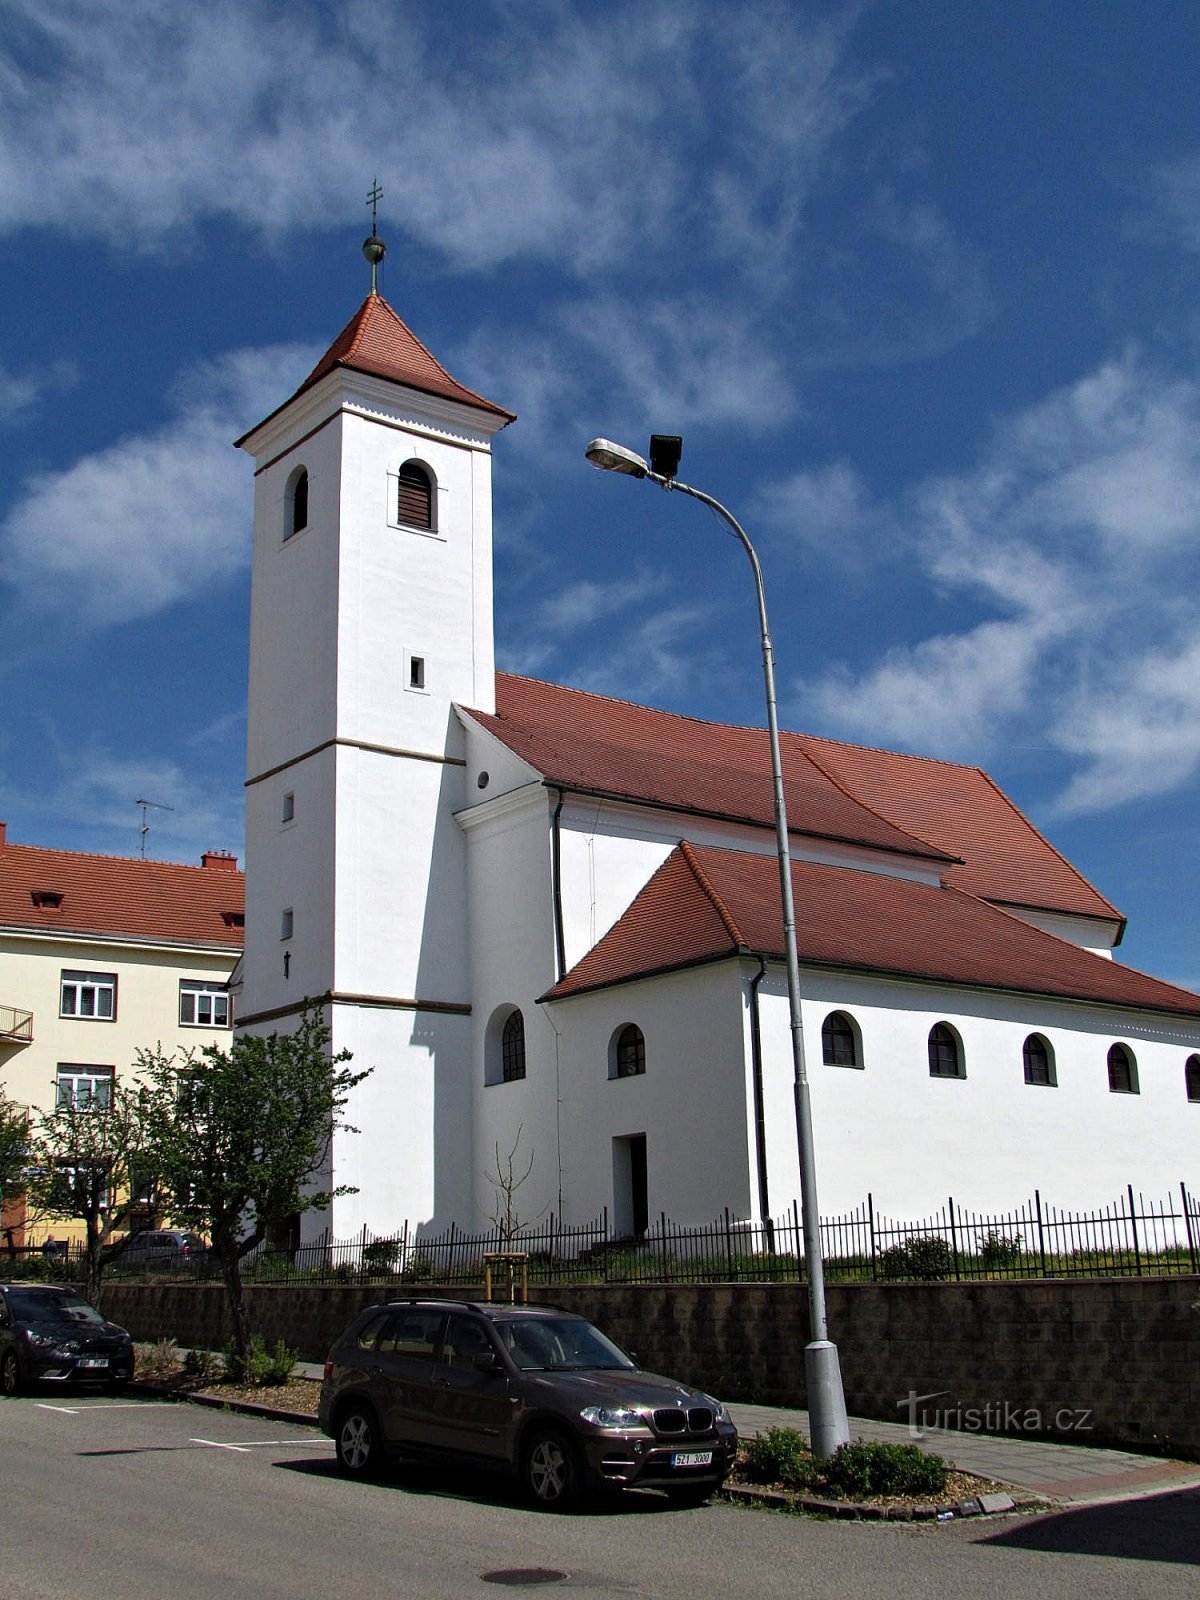 Church of Master Jan Hus in Uherskobrod